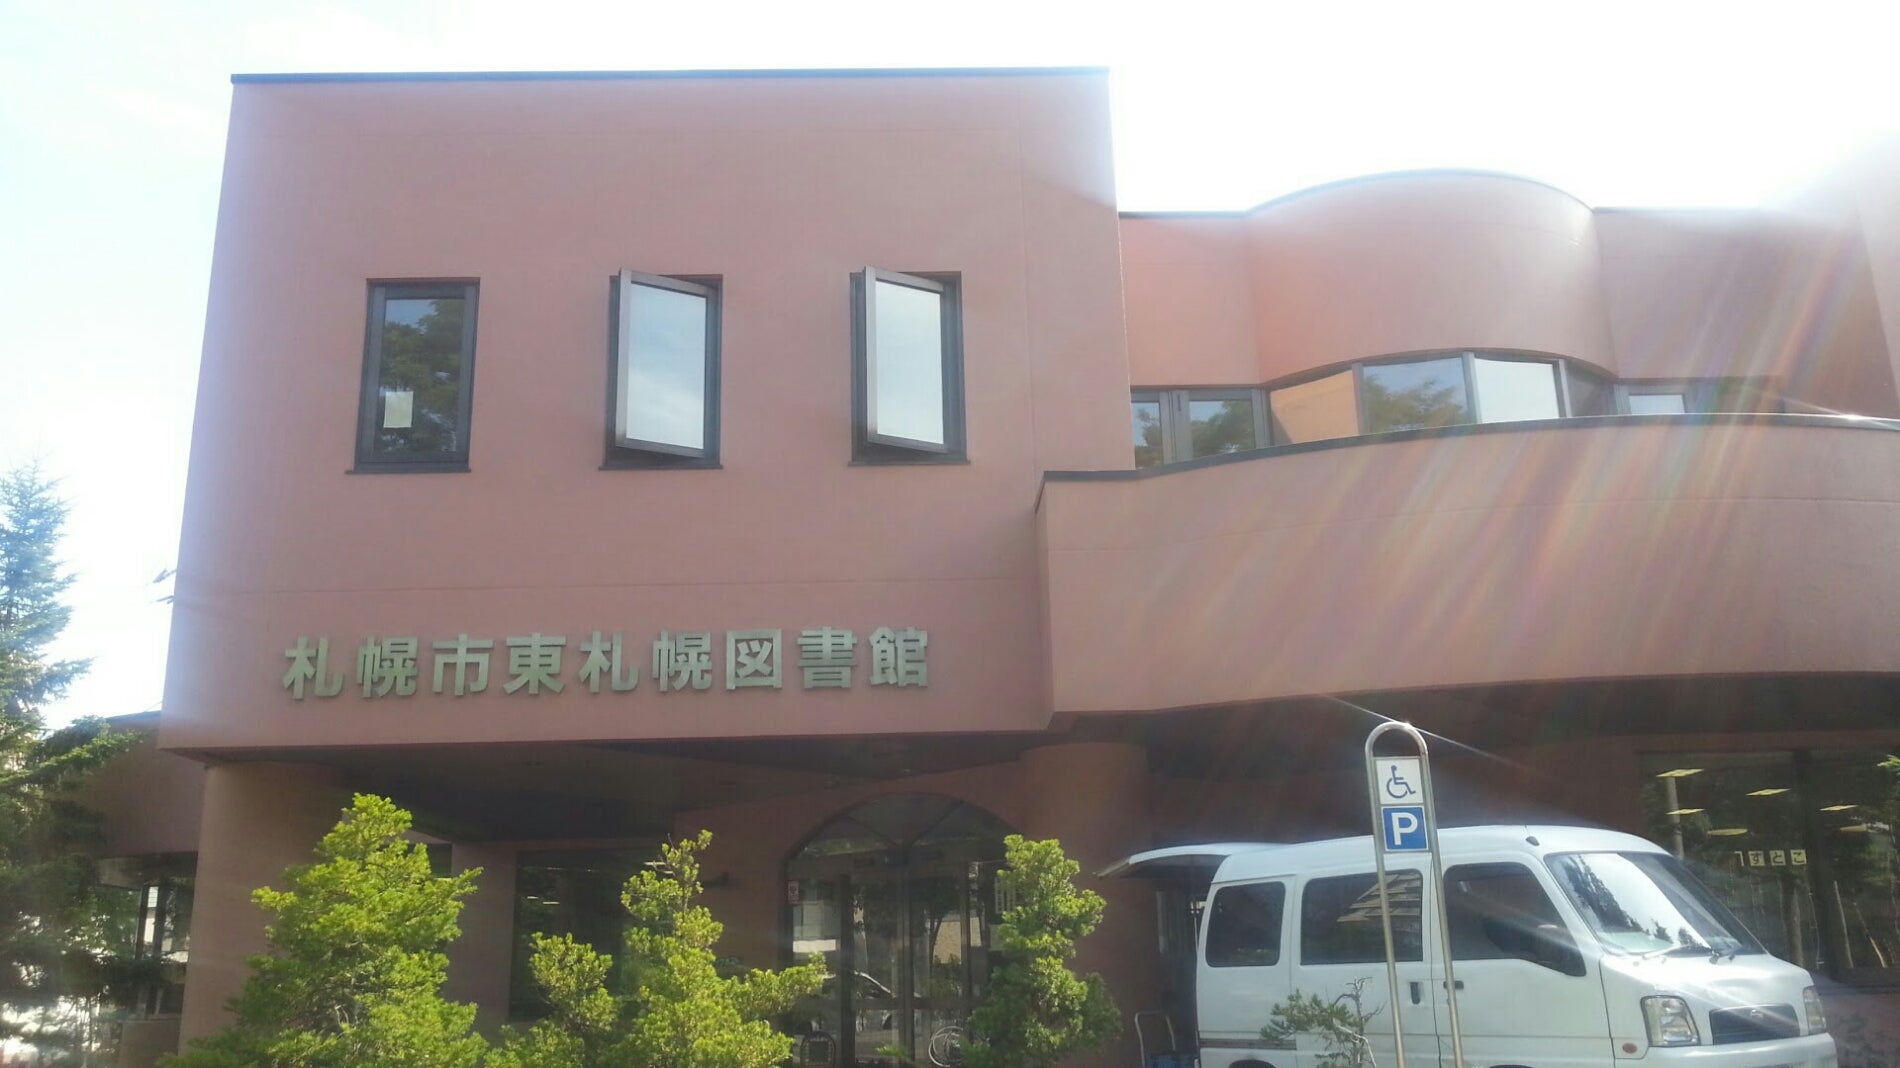 札幌市東札幌図書館